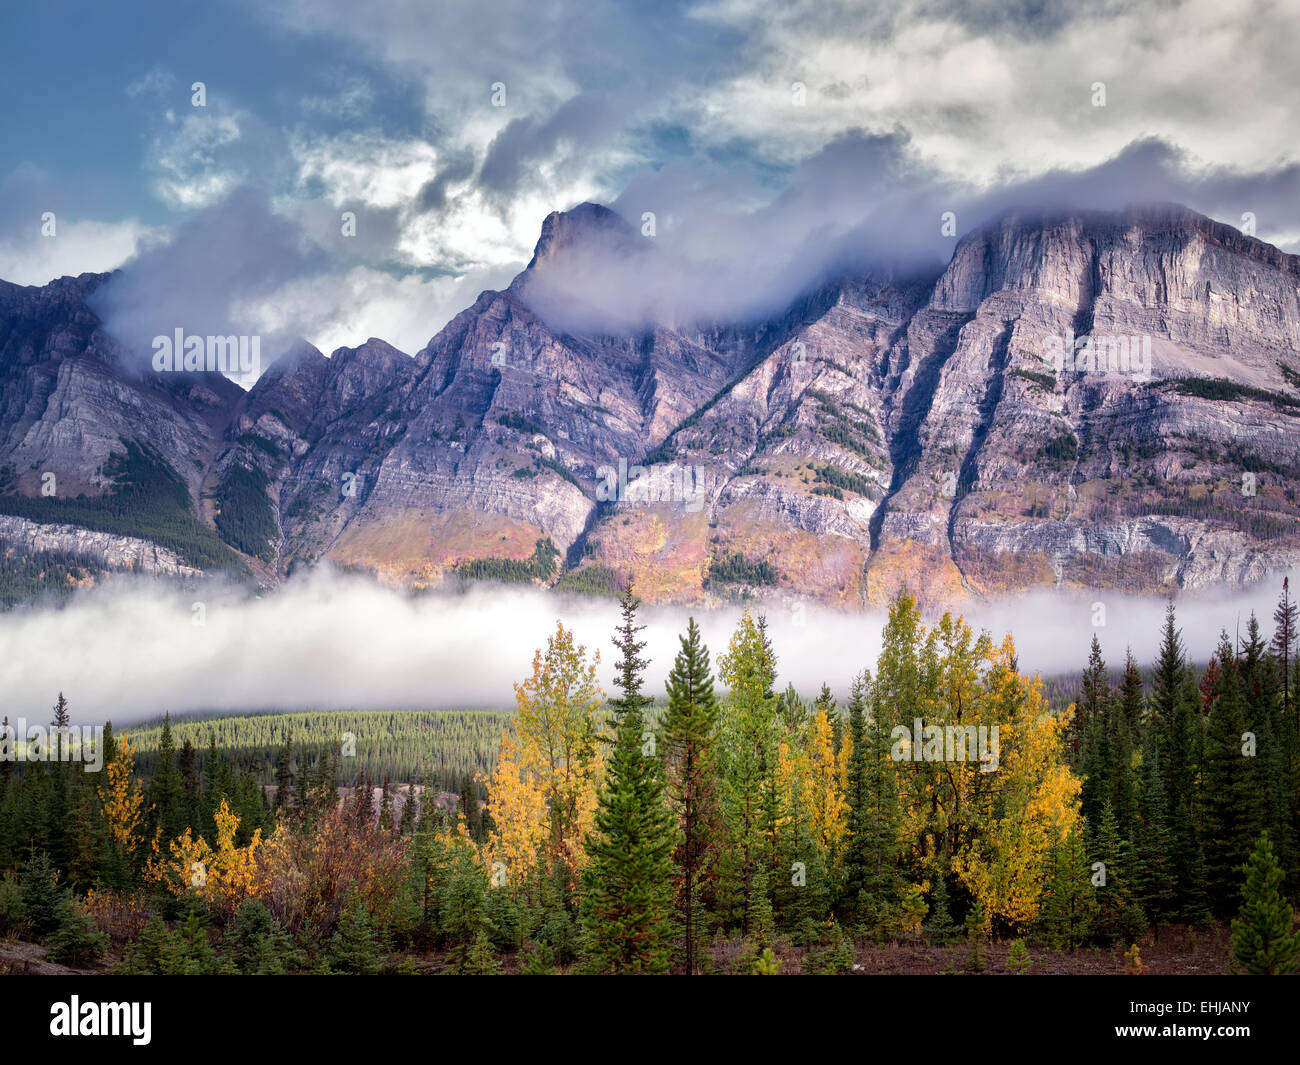 La niebla y las nubes bajas con colores otoñales. Parque Nacional de Banff. Alberta, Canadá Foto de stock